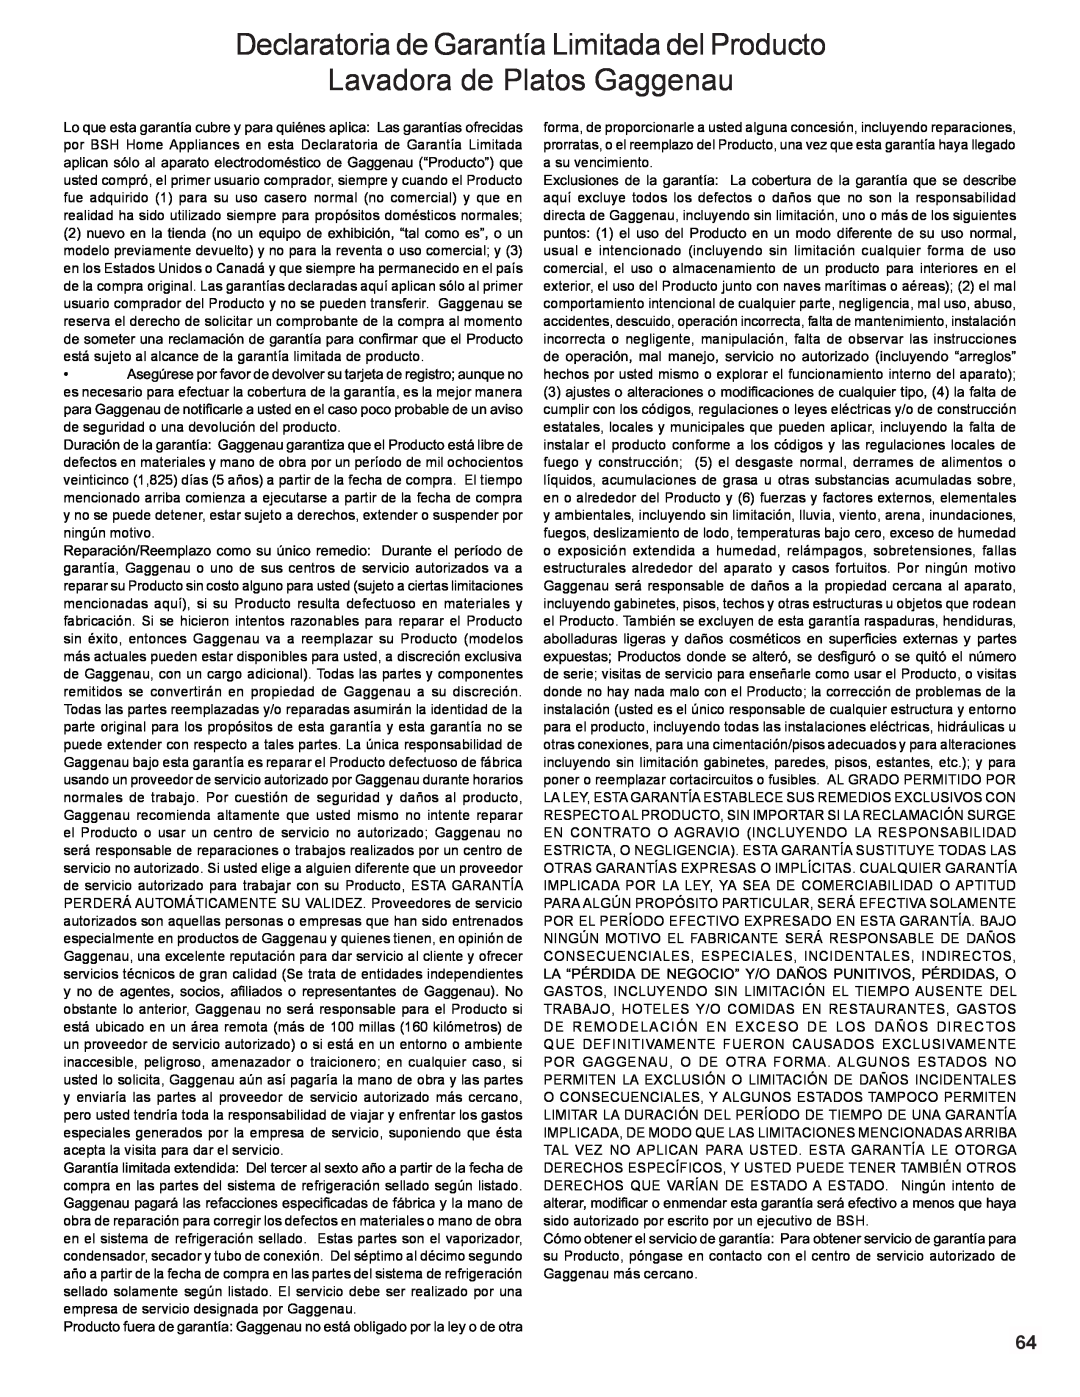 Gaggenau DF 241 manual Declaratoria de Garantía Limitada del Producto, Lavadora de Platos Gaggenau 